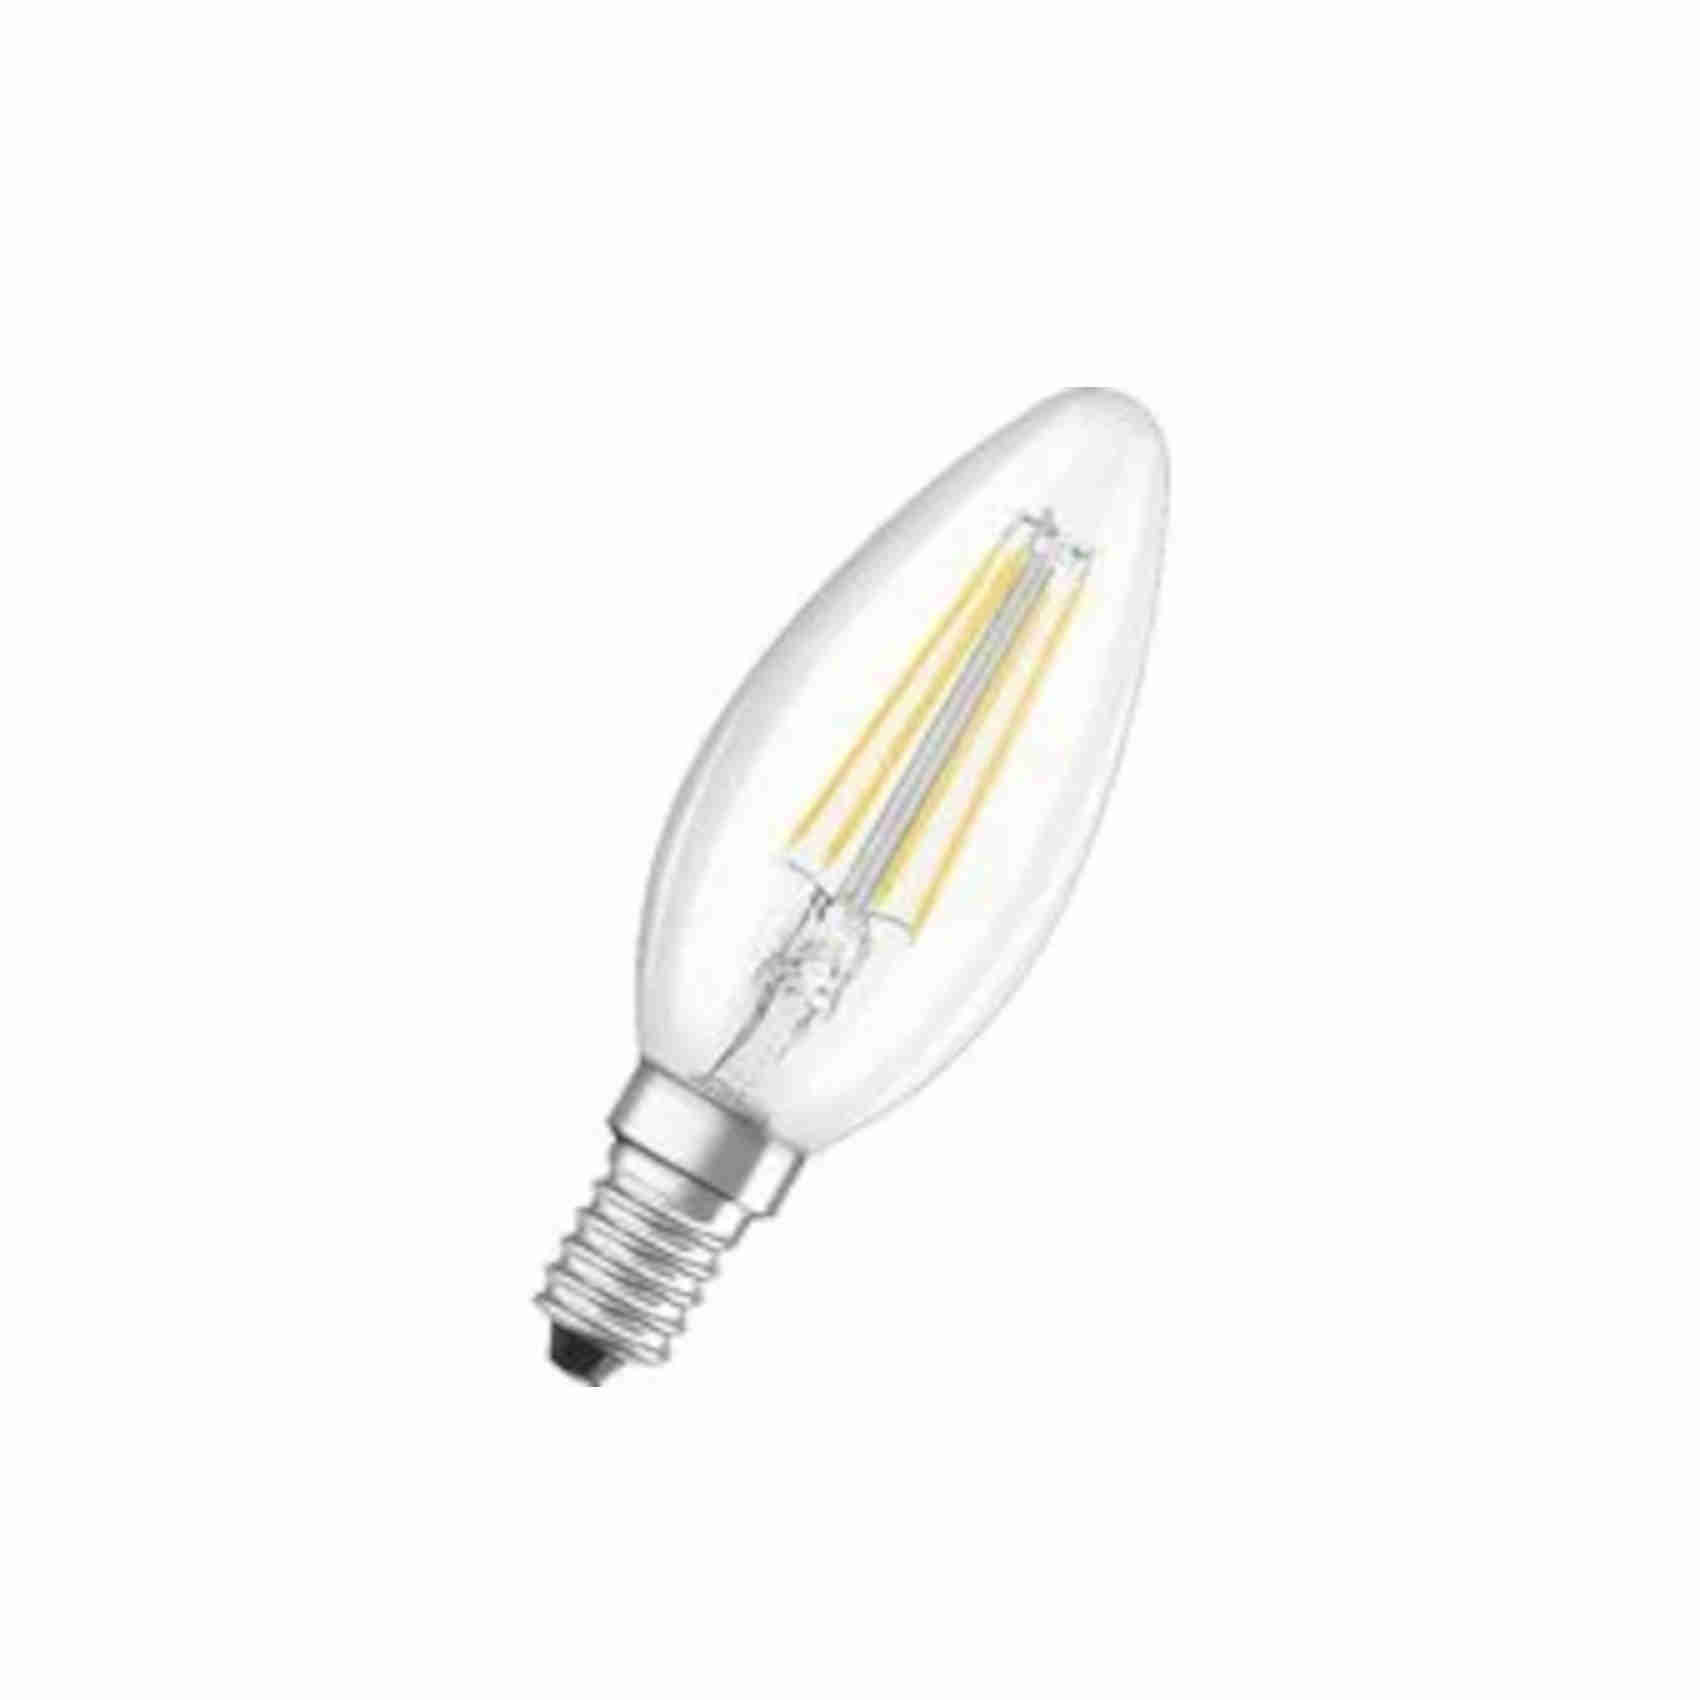 v-tac 10x lampadine led filamento candela con attacco e14-4w (equivalenti a 35w) luce bianca naturale, 1pezzo. nero uomo